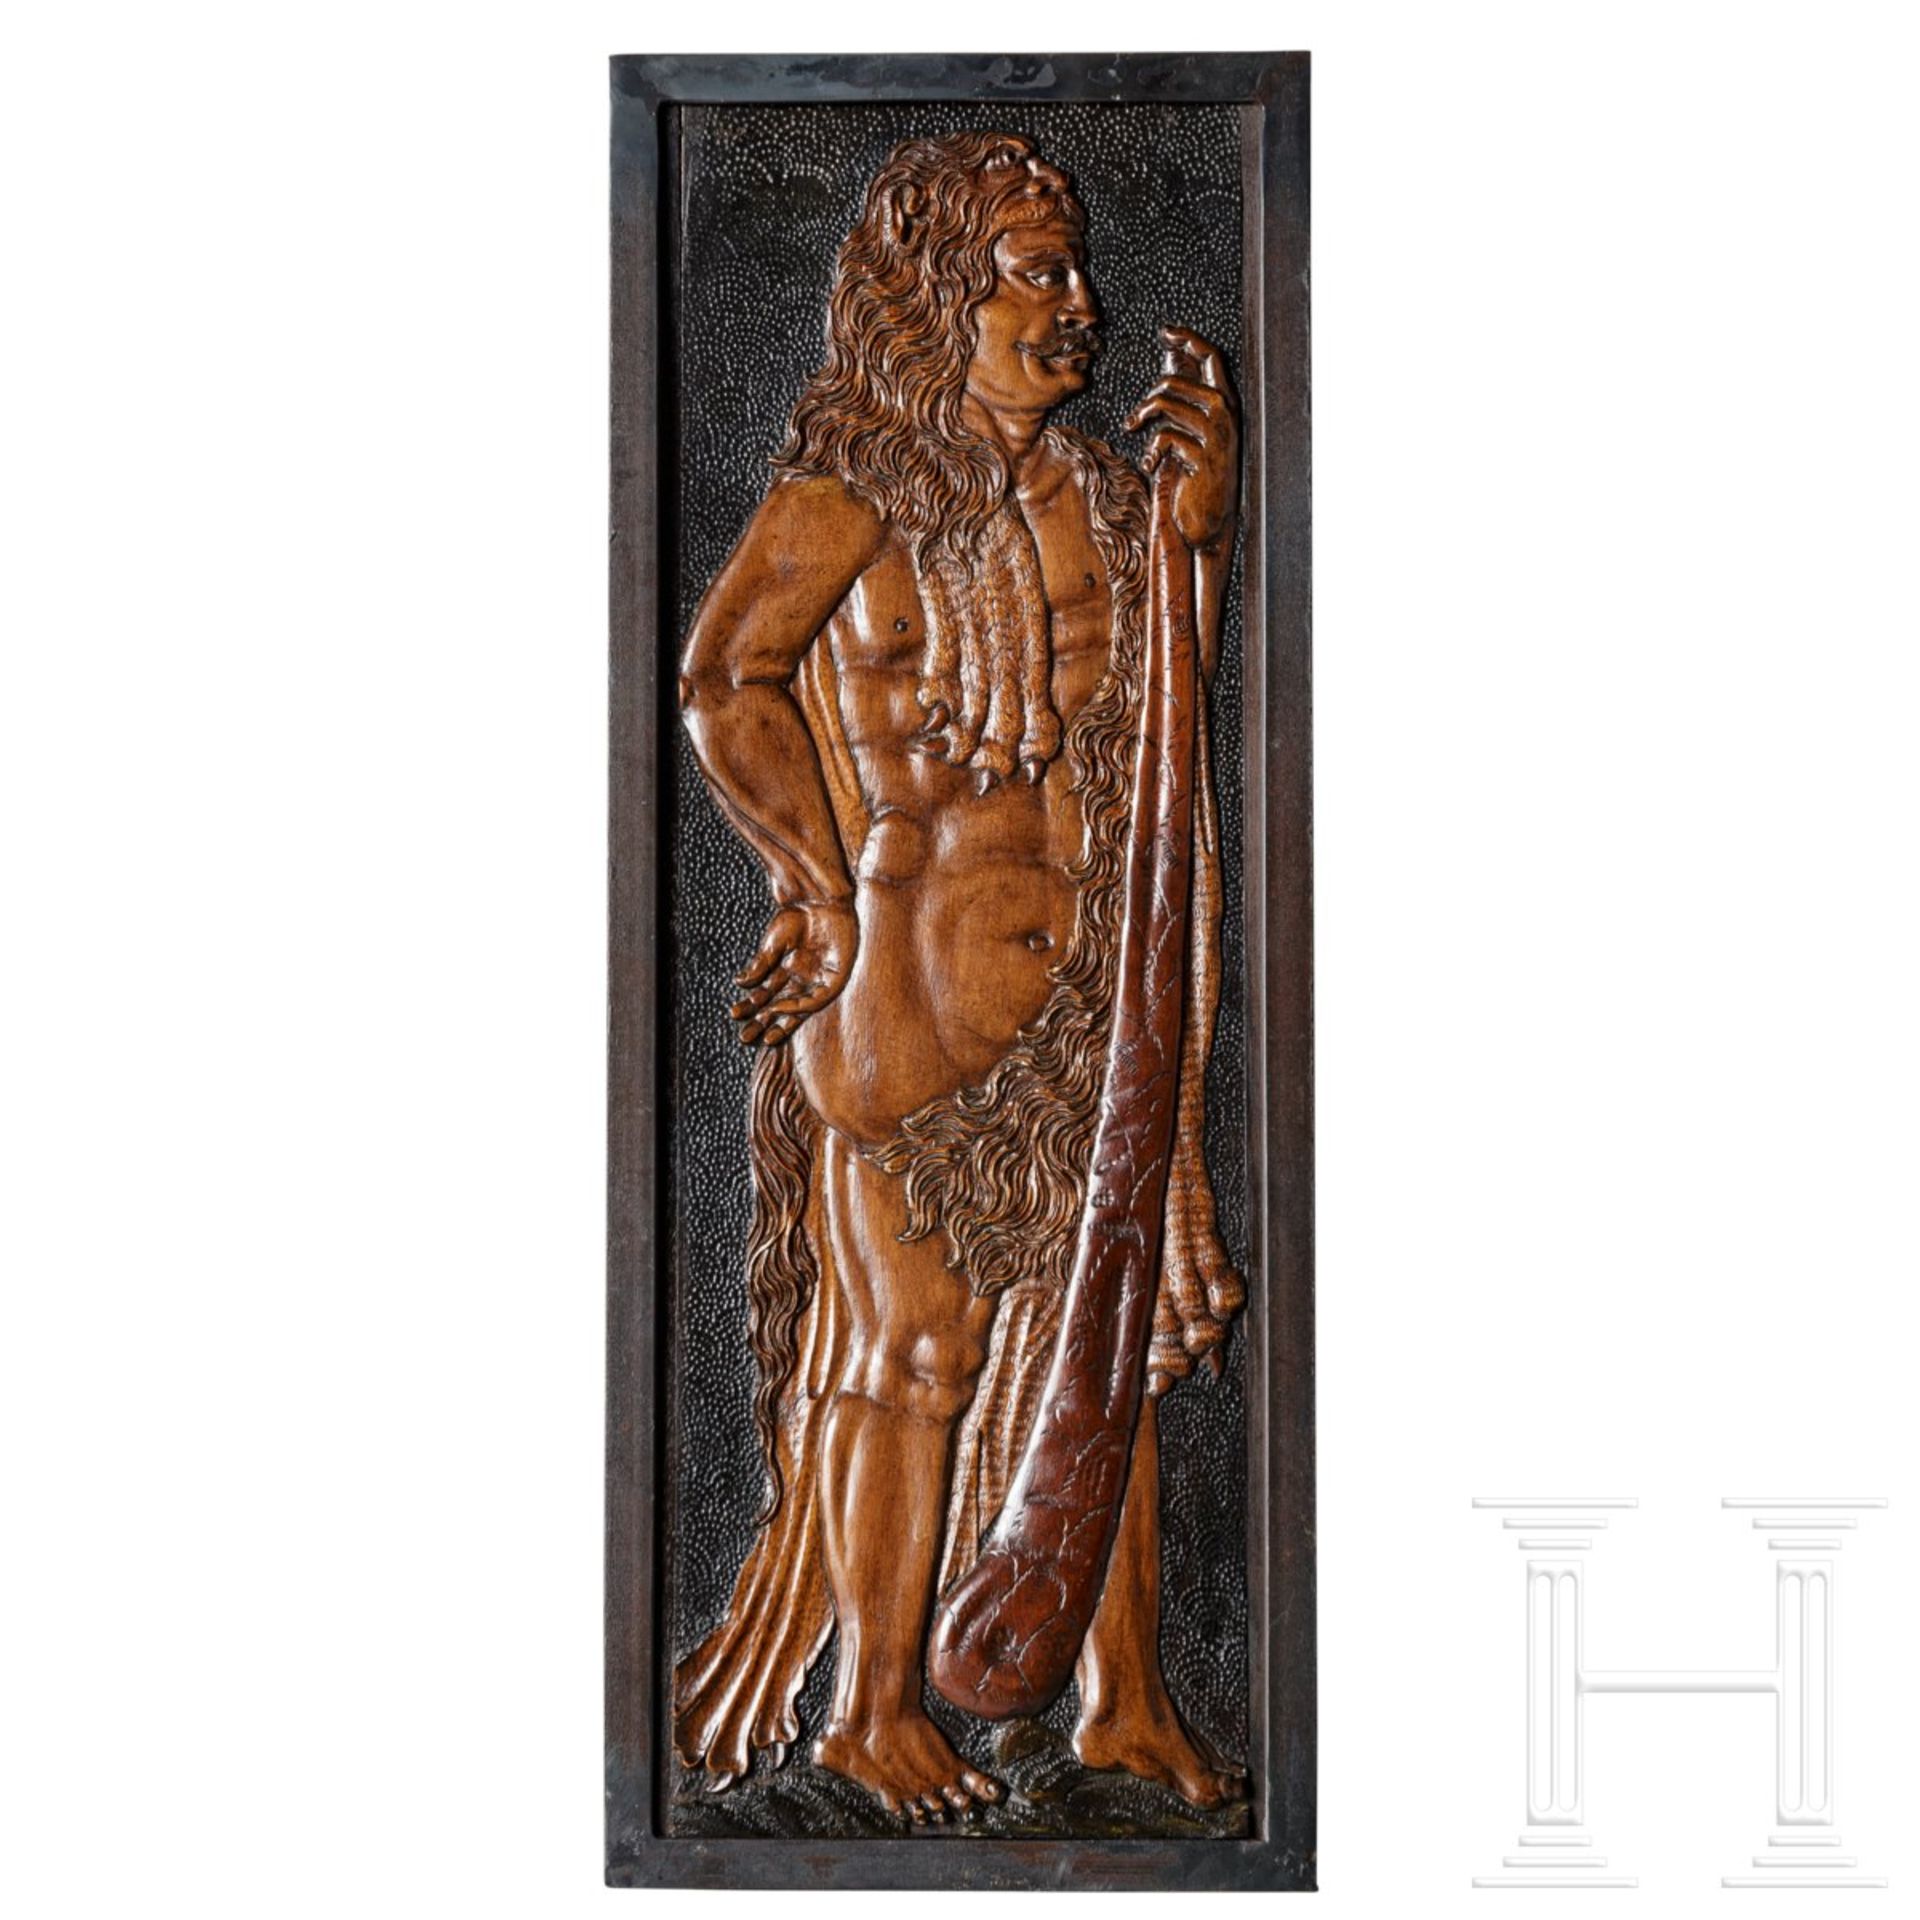 Herakles im Löwenfell, Eger, 17. Jhdt.Typische Reliefdarstellung des Herakles, in das Fell des